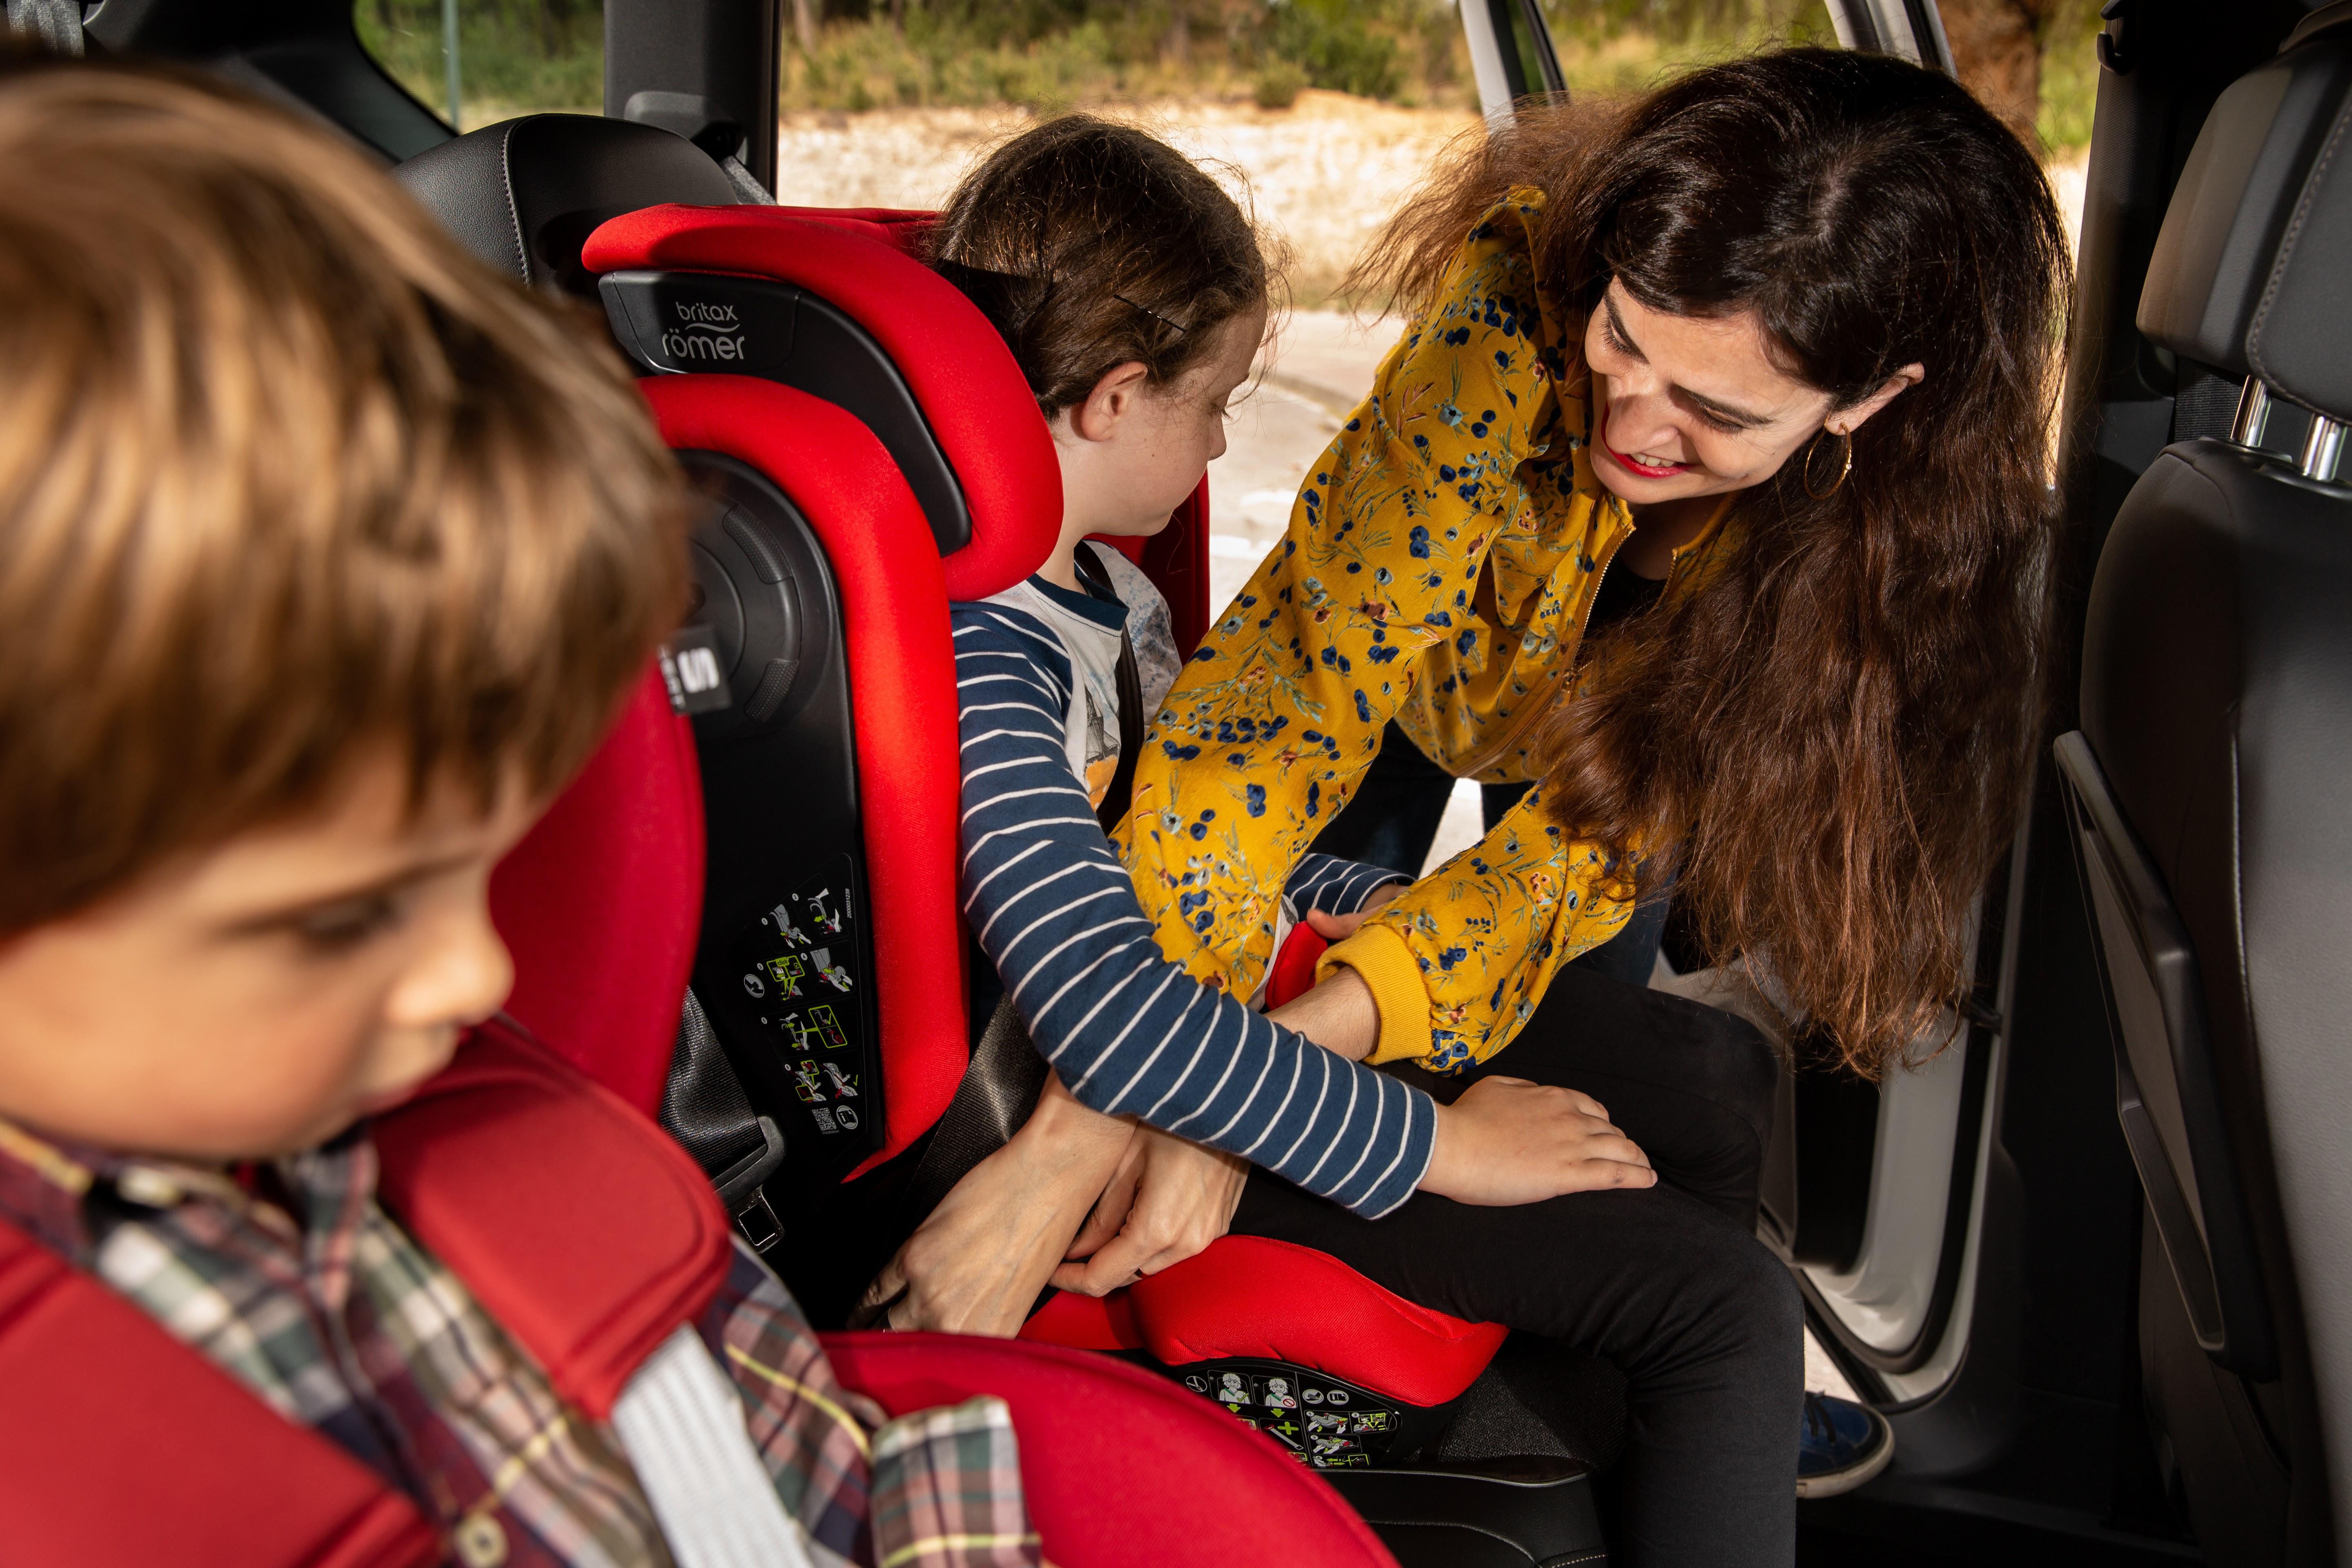 Безопасная перевозка детей в автомобиле: Правила перевозки детей в автомобиле 2021 - ПДД, изменения, комментарии